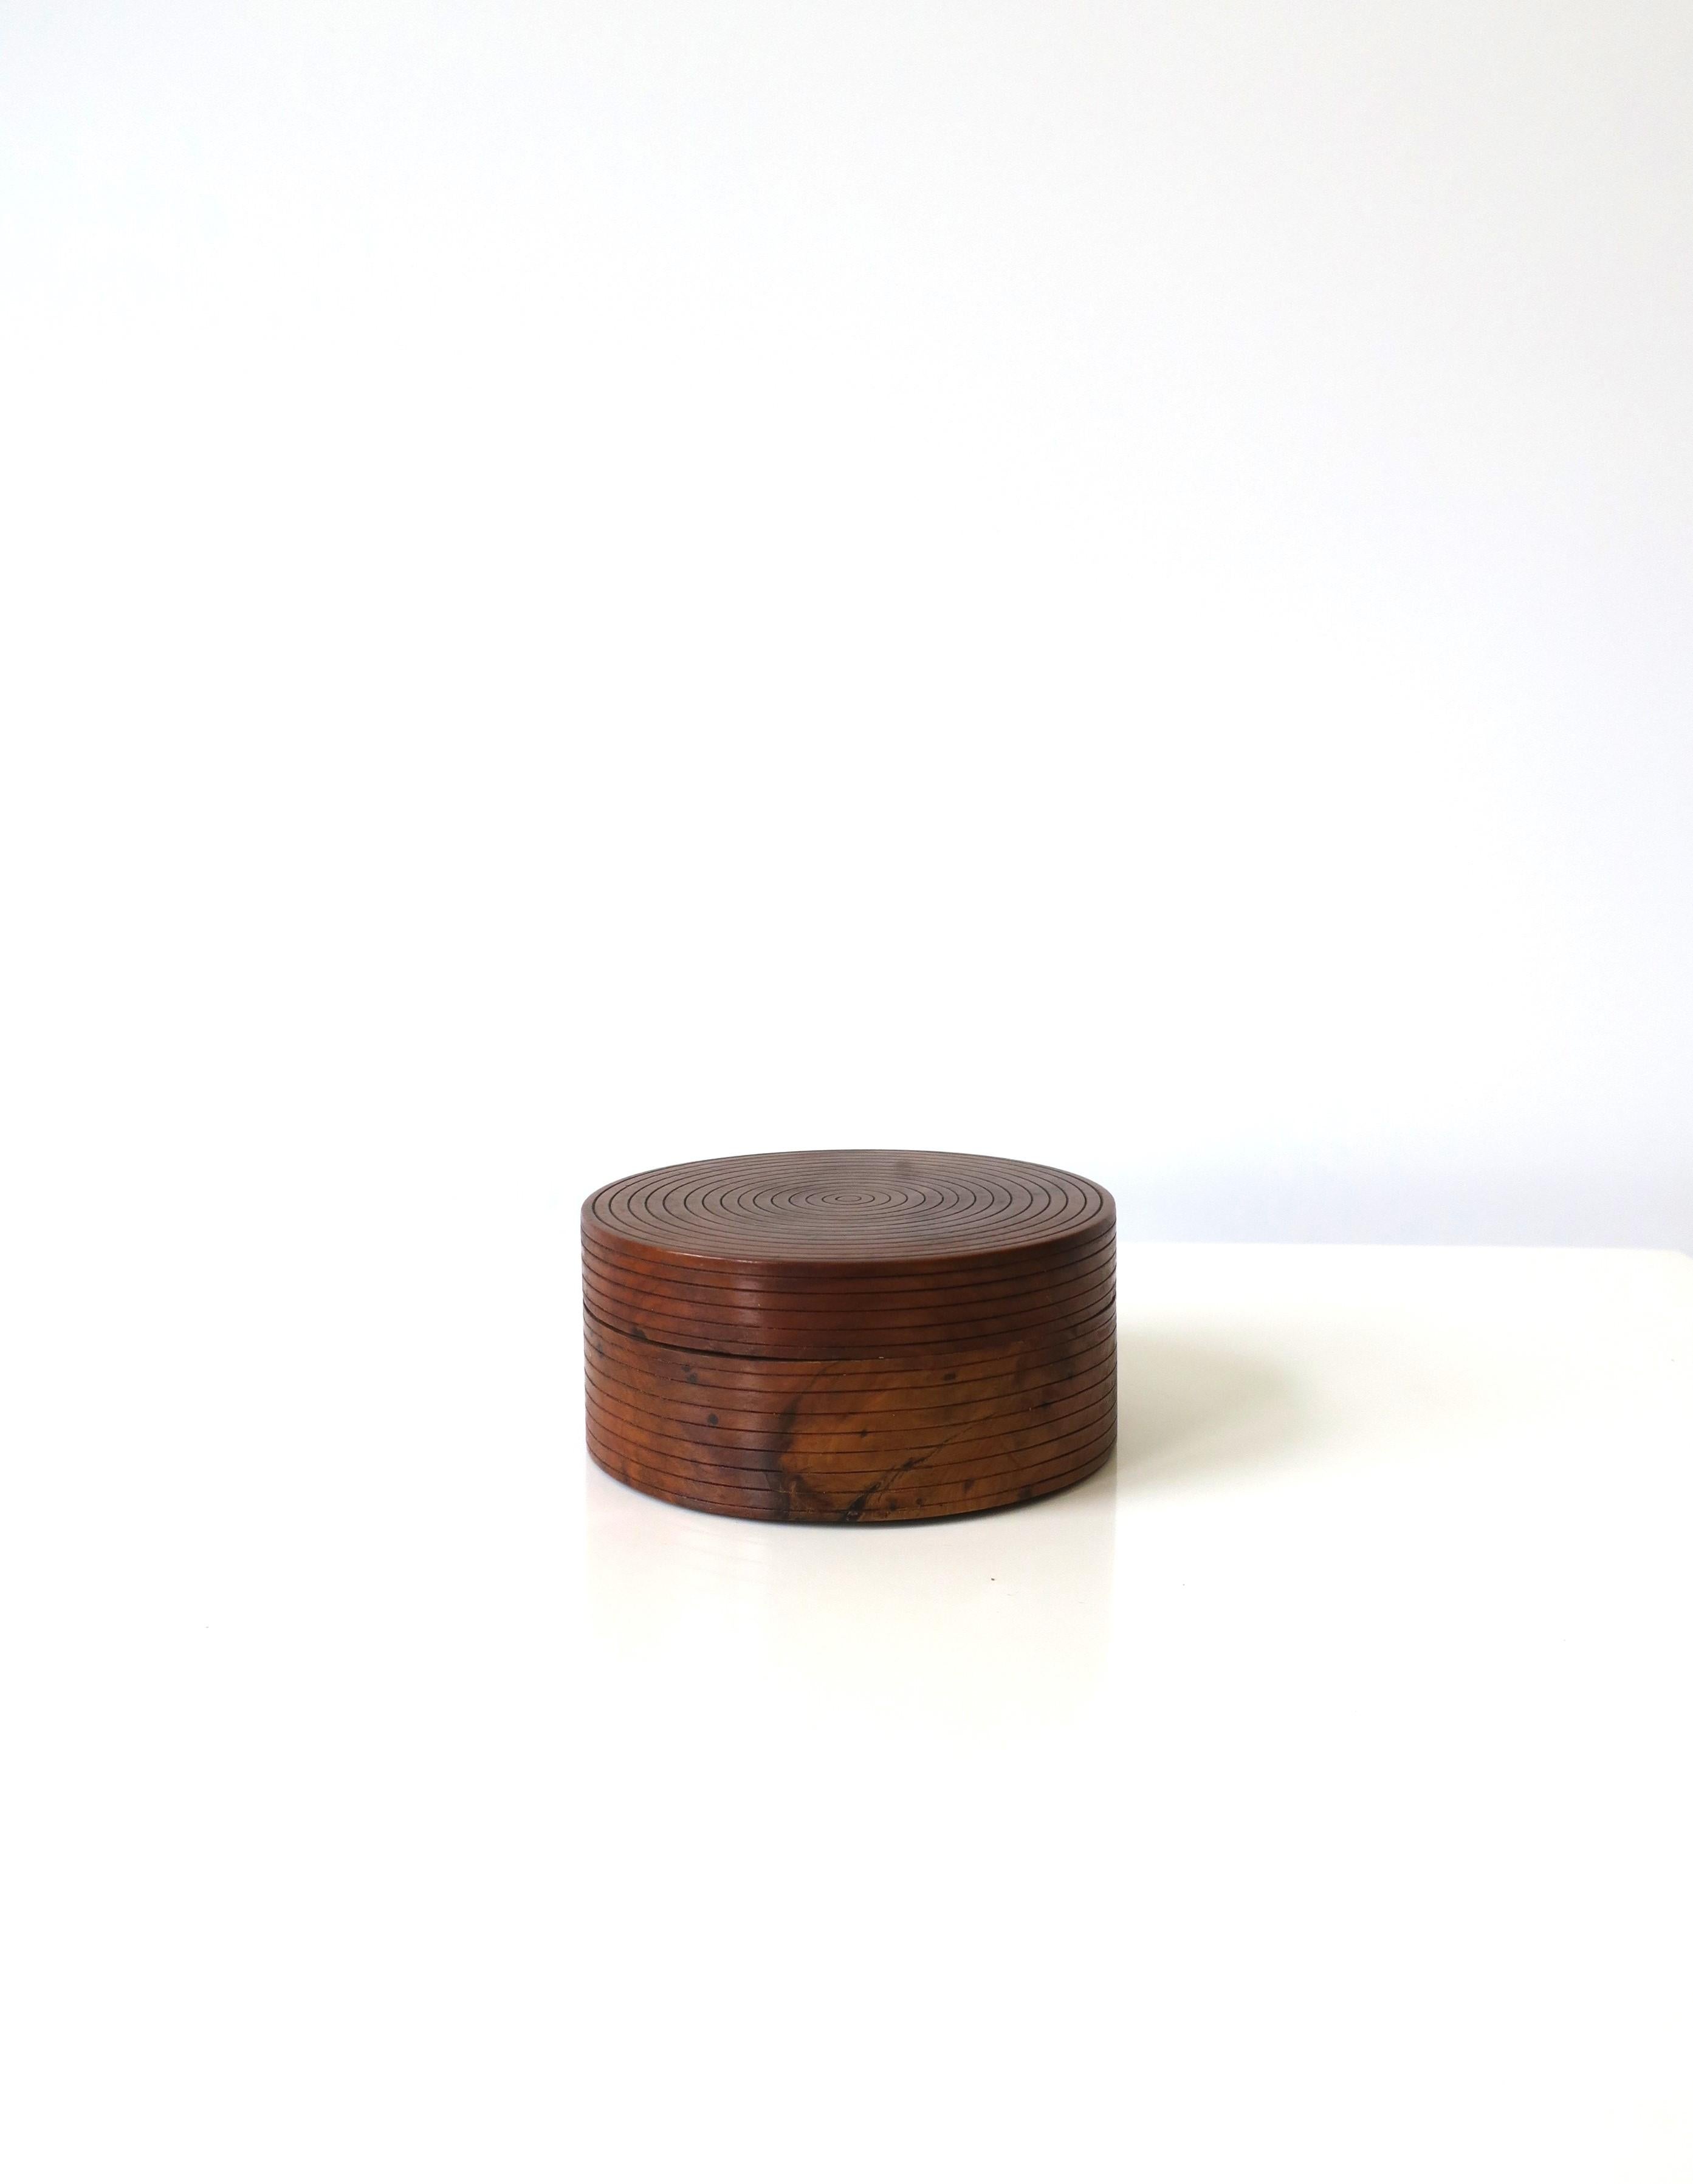 Eine schöne runde Dose aus braunem Wurzelholz mit runden Details im minimalistischen Stil, circa Ende des 20. Jahrhunderts. Ein großartiges Kästchen für jede Eitelkeit oder jeden Schreibtisch für Schmuck oder kleine Gegenstände. Abmessungen: 3,94